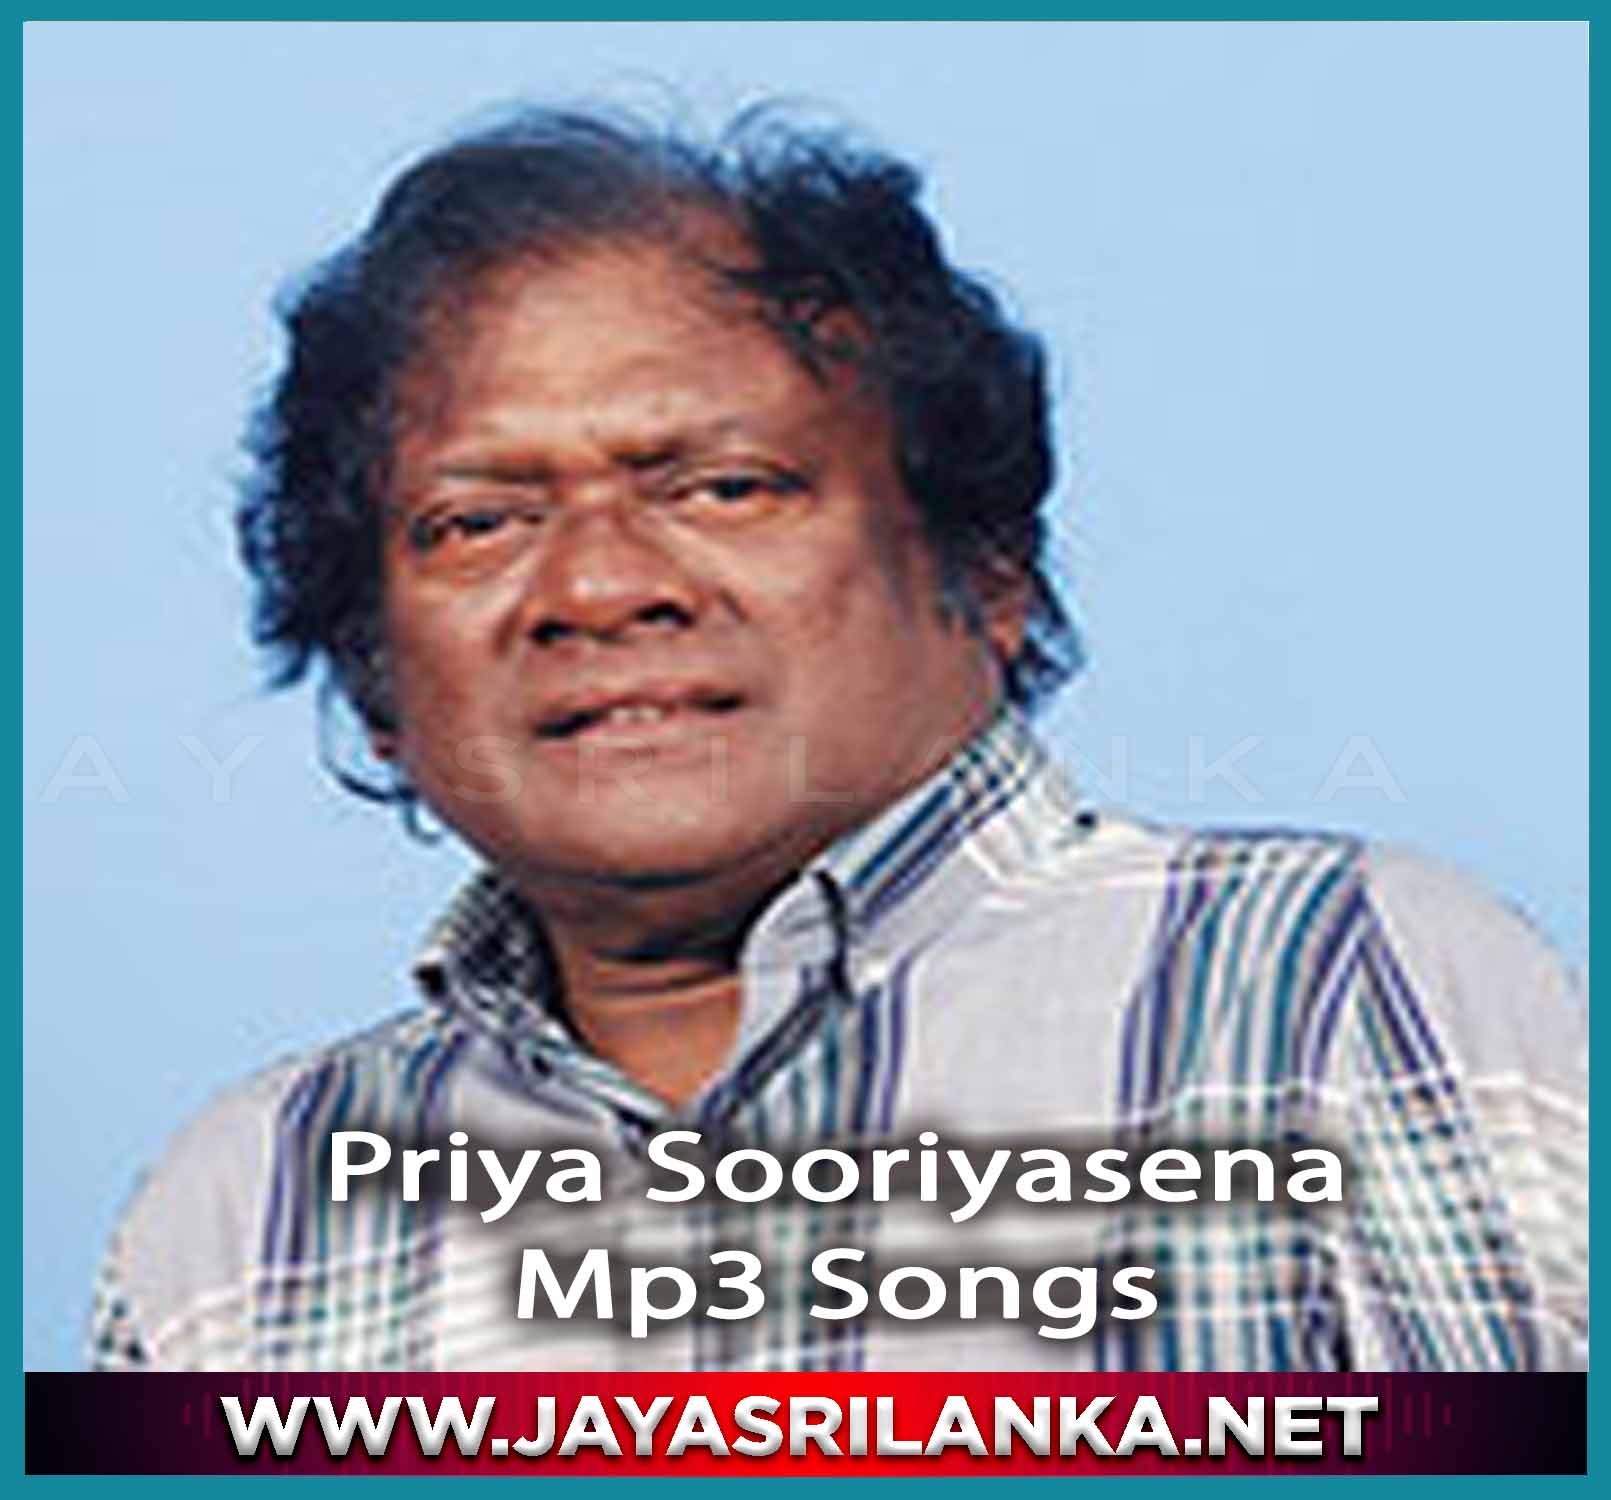 Priya Sooriyasena  